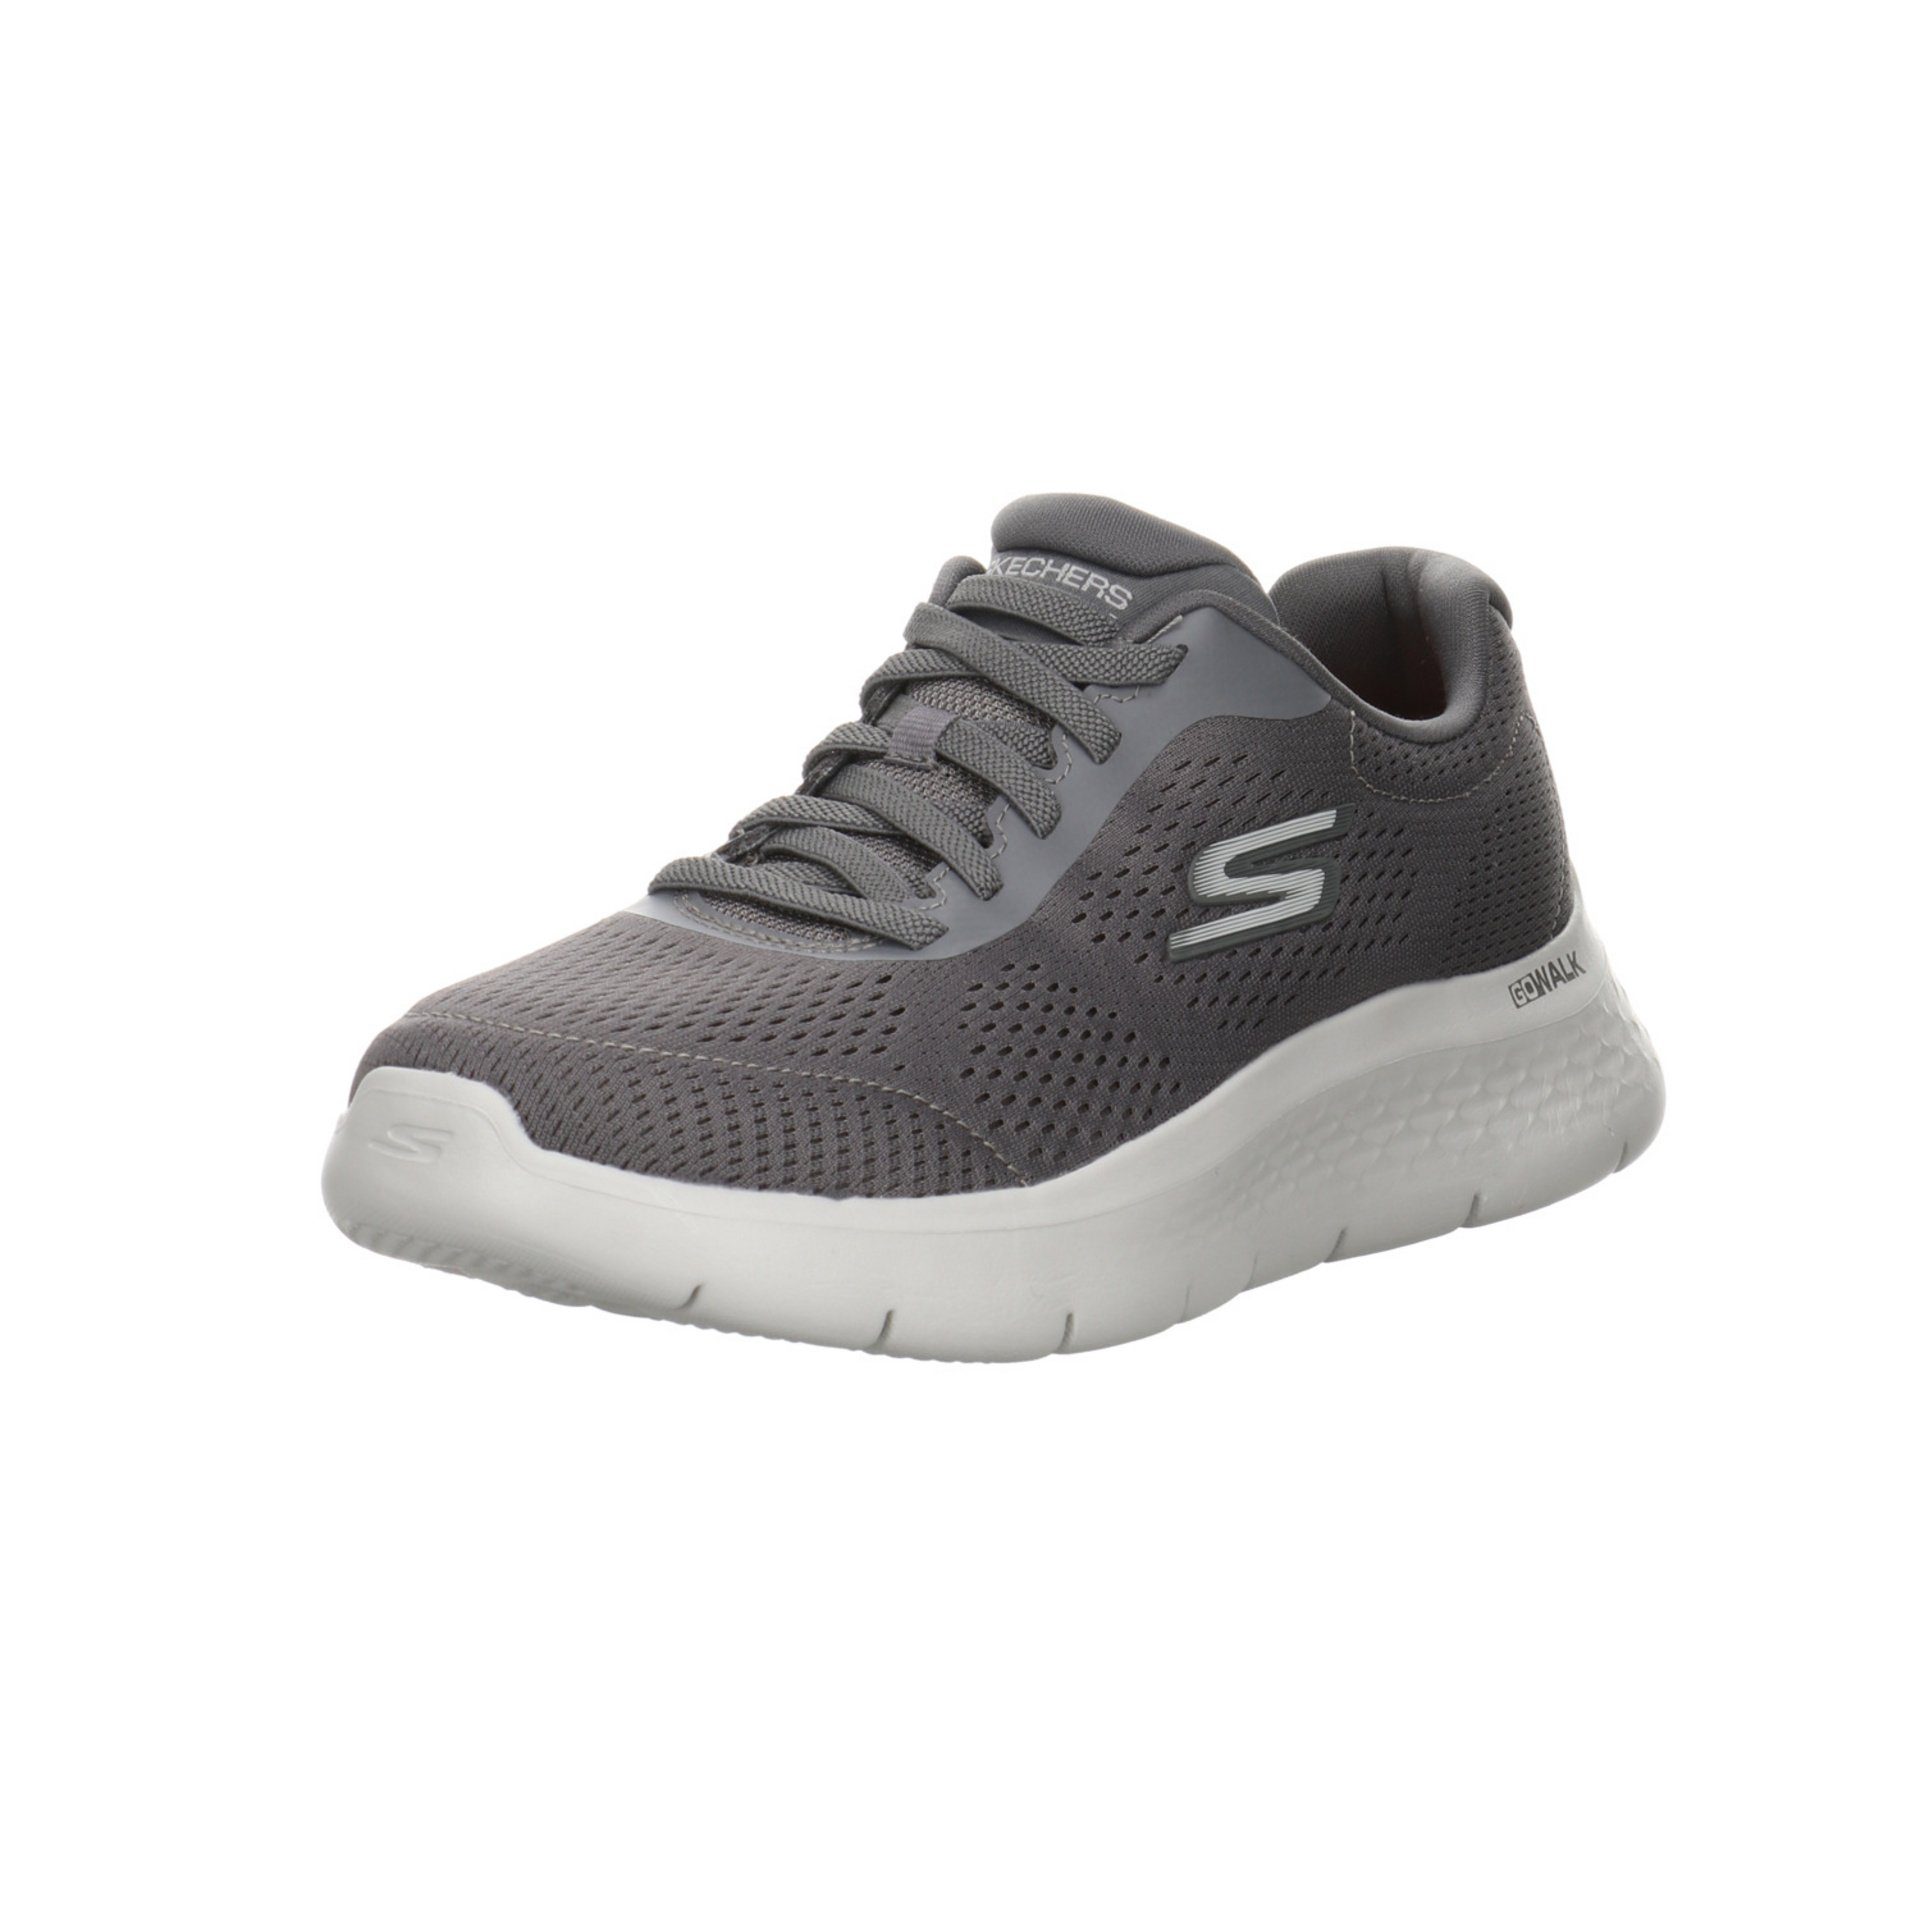 Skechers Herren Schnürhalbschuhe Go Walk Flex Sneaker Sneaker Synthetik gray/charcoal